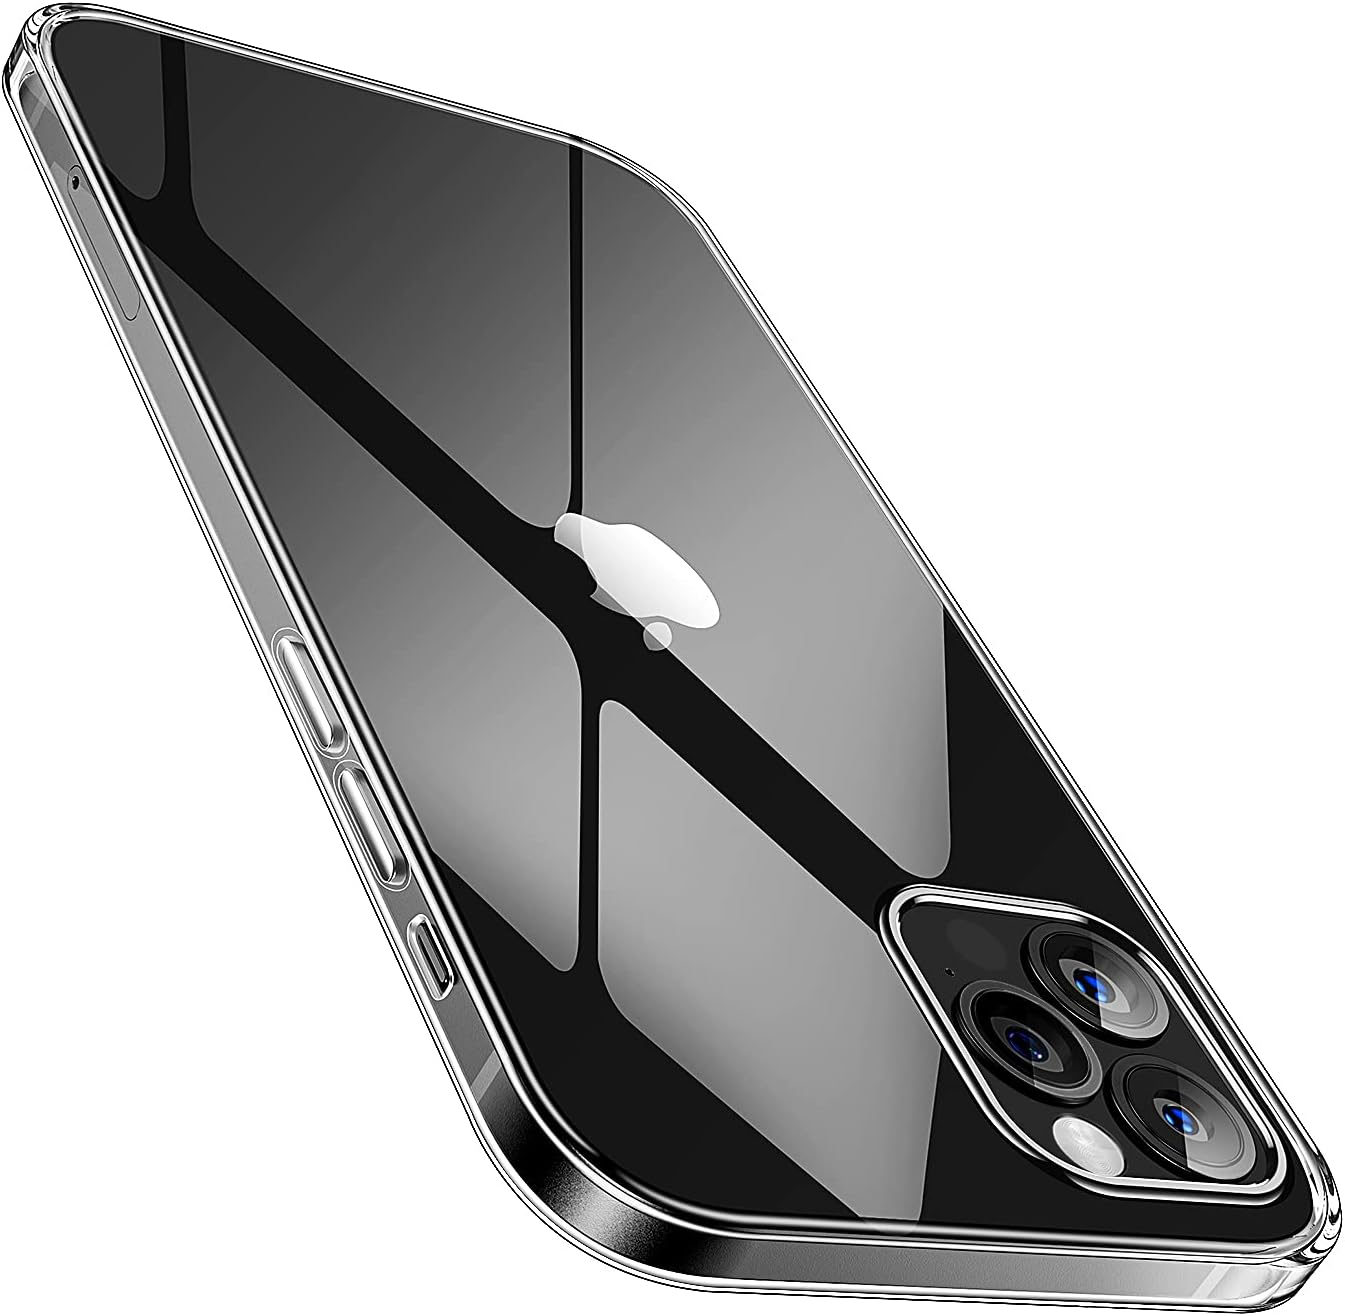 SMARTDEVIL Coque iPhone 12/ iPhone 12 Pro, Transparente, AIR Cushion, Bumper Renforcé en TPU, Dos en PC, Protection Coin, Compatible avec iPhone 12/ iPhone 12 Pro - Bleu Clair